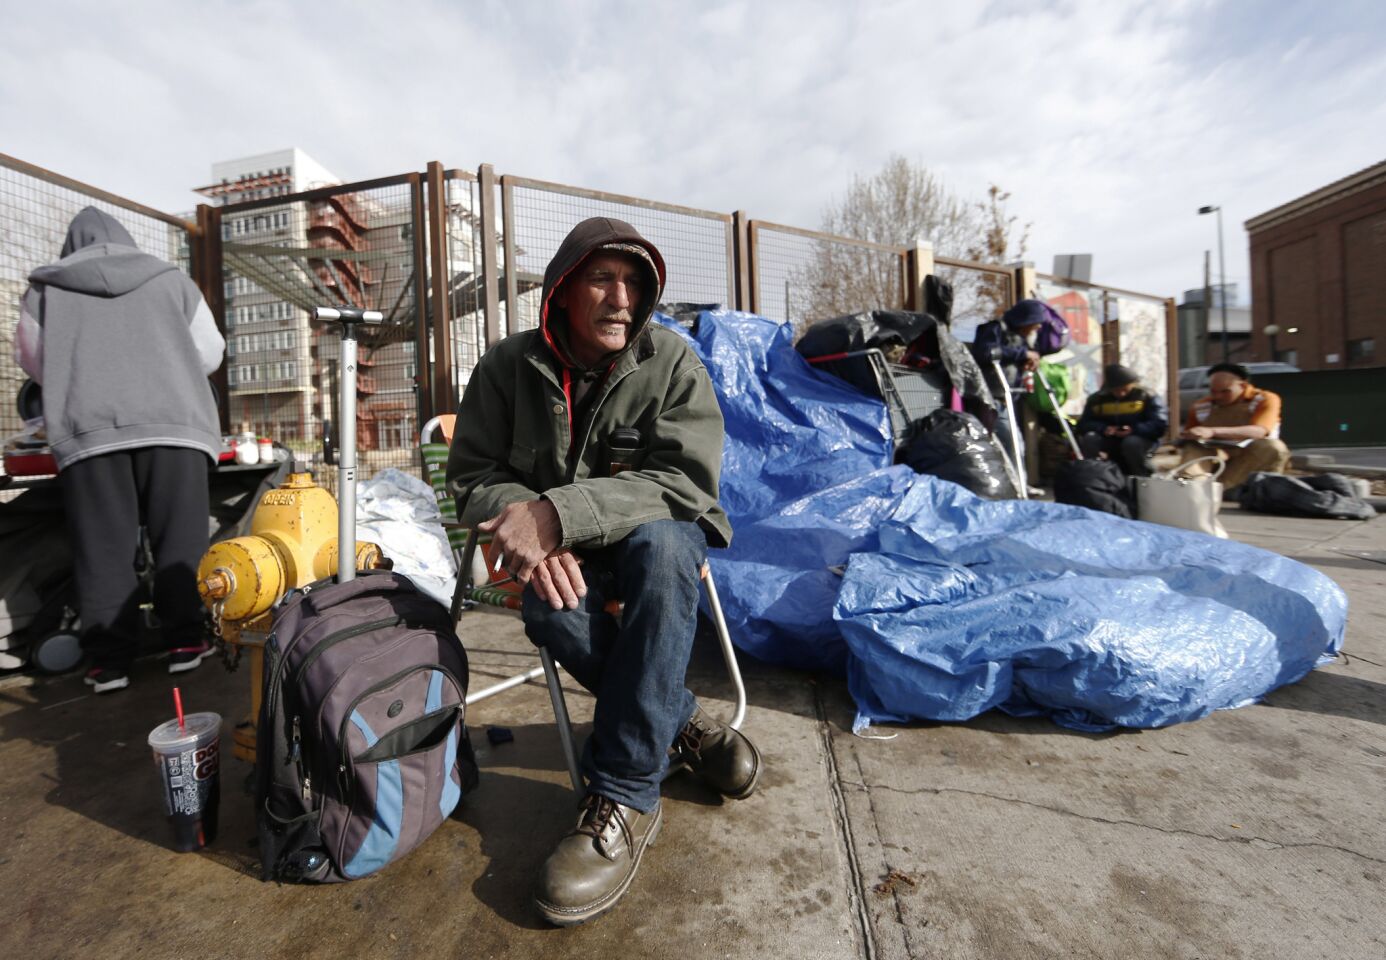 Homelessness in Denver